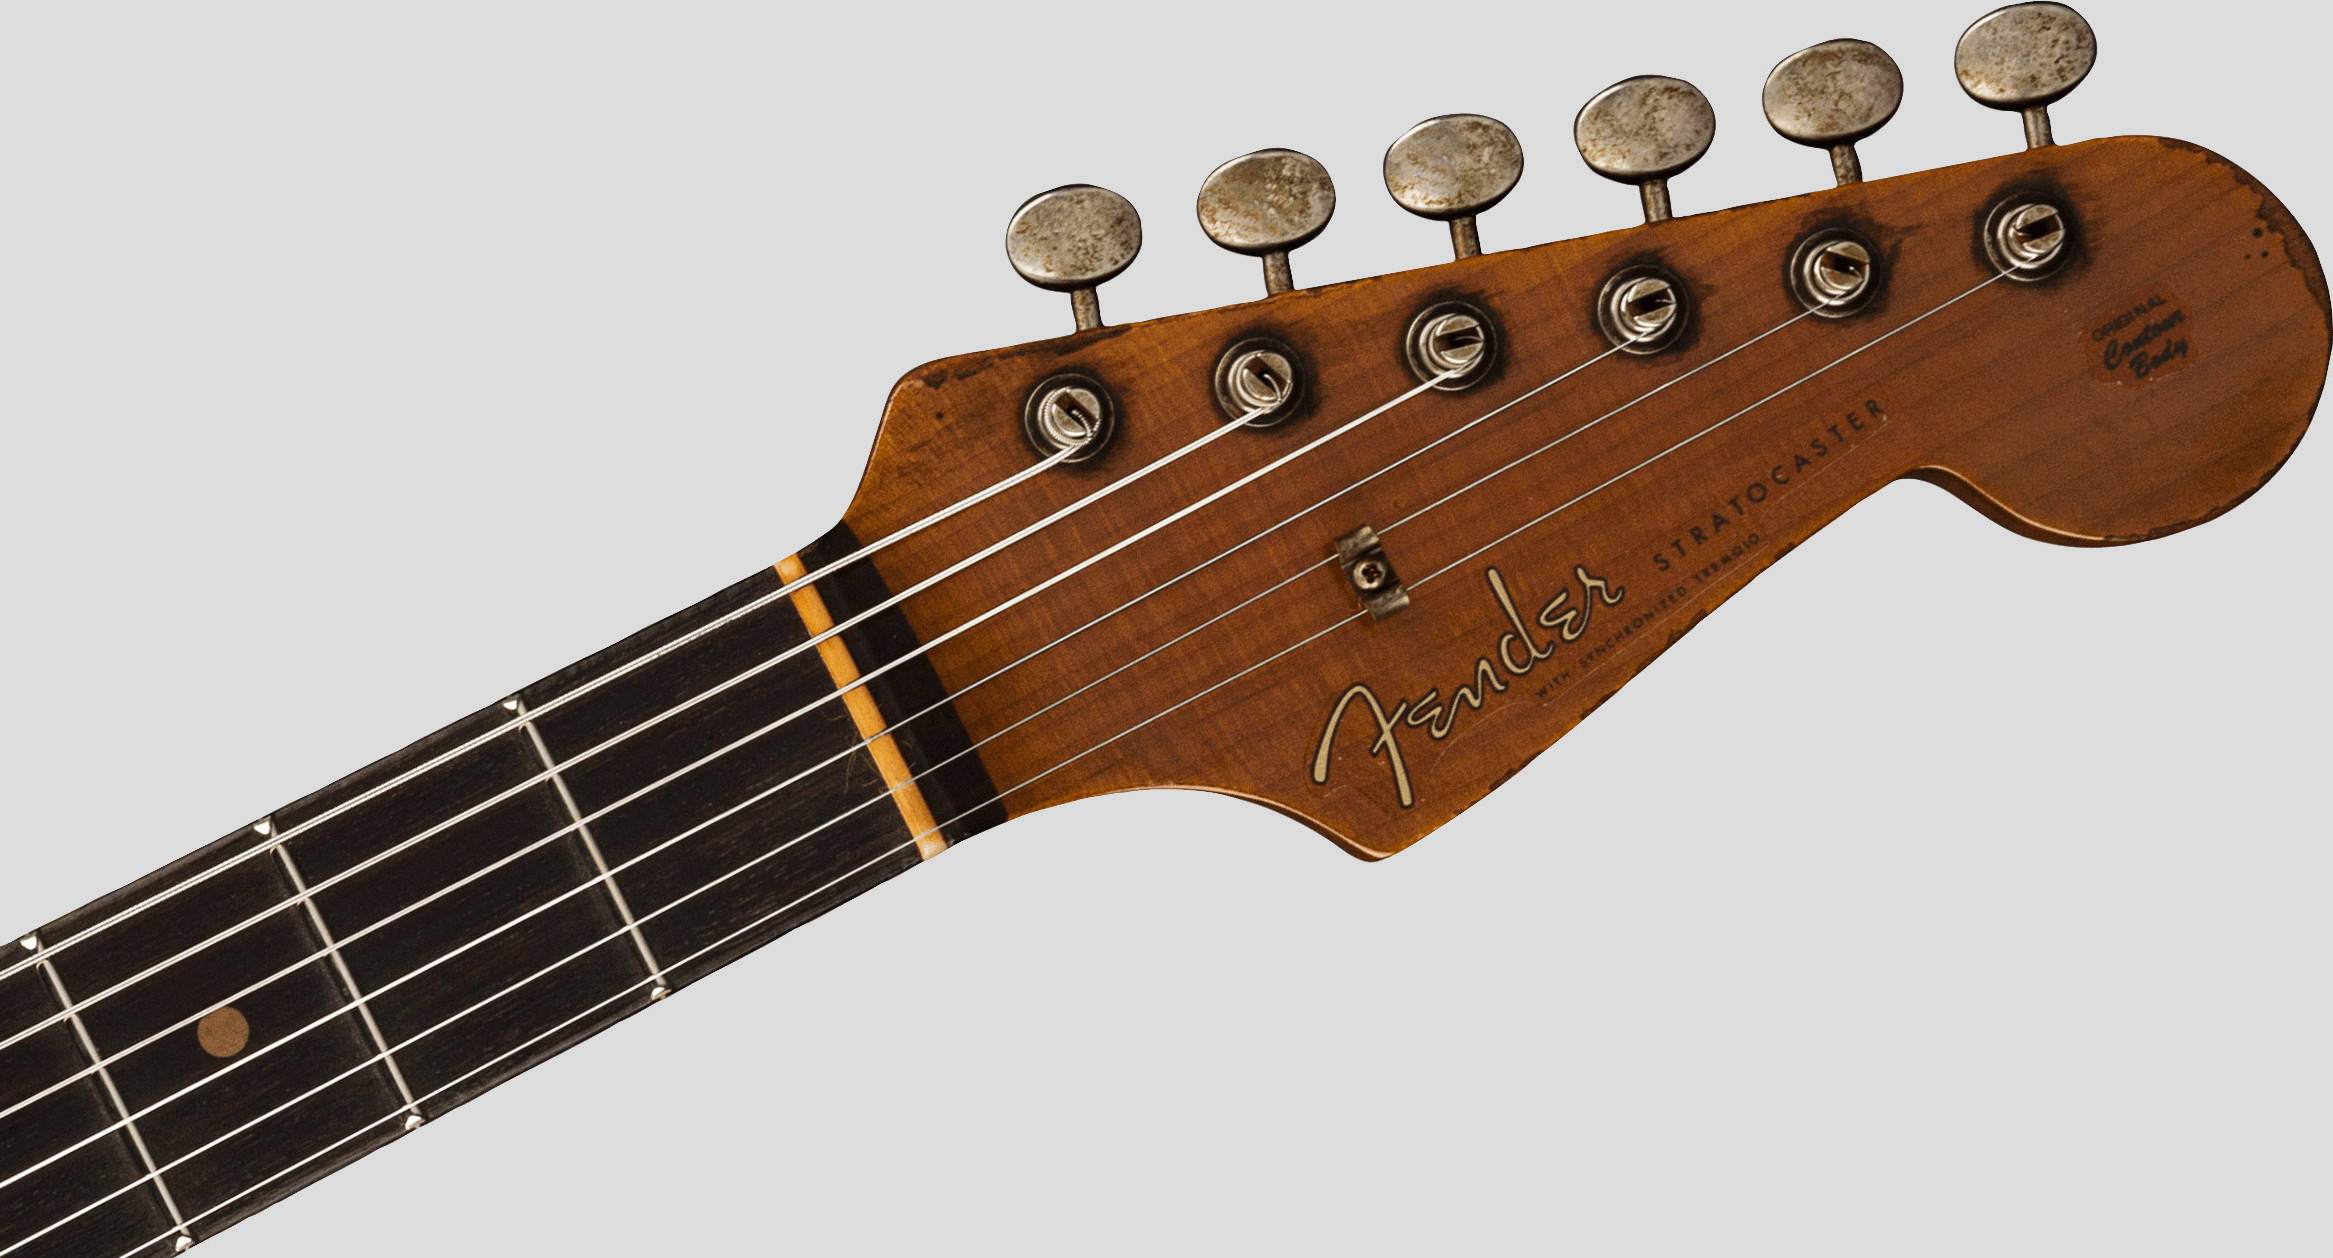 Fender Custom Shop Limited Edition Roasted 61 Stratocaster Aged 3-Color Sunburst SHR 5